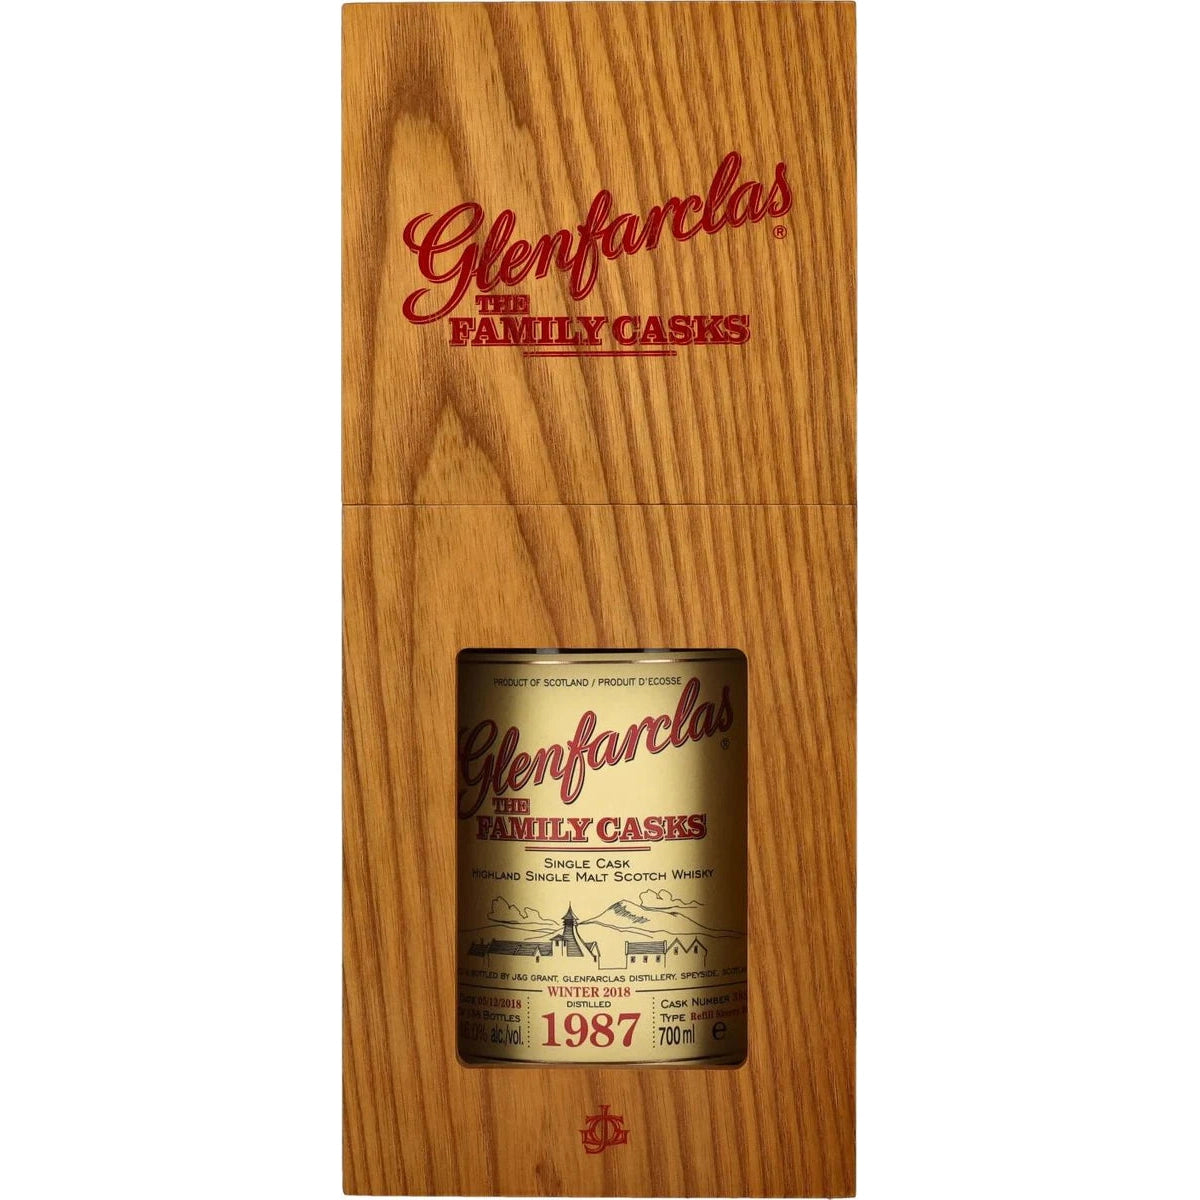 Glenfarclas THE FAMILY CASKS Single Cask WINTER 2018 Refill Sherry Butt 1987 46% Vol. 0,7l in Giftbox